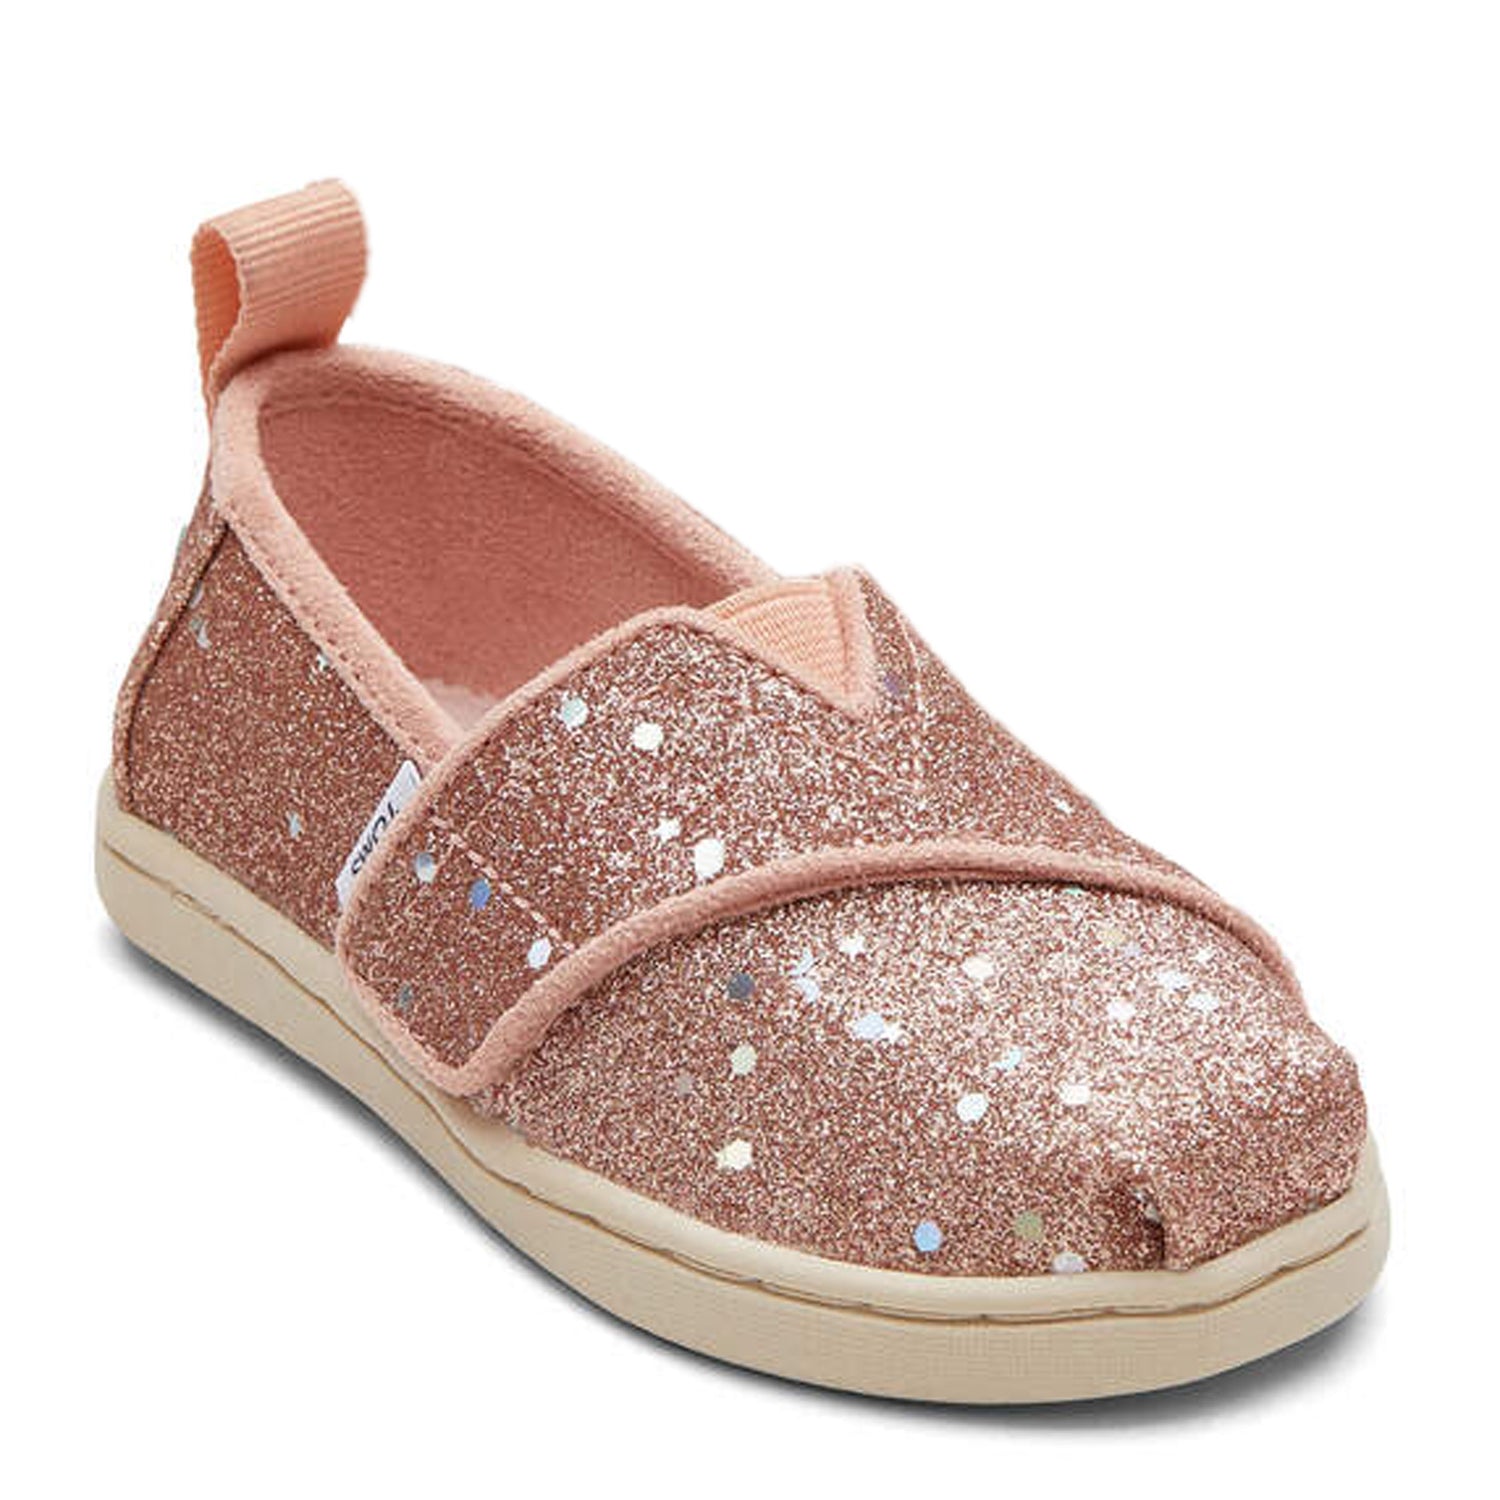 Peltz Shoes  Girl's Toms Alpargata Tiny Slip-On - Toddler Rose Gold Glitter 10018672